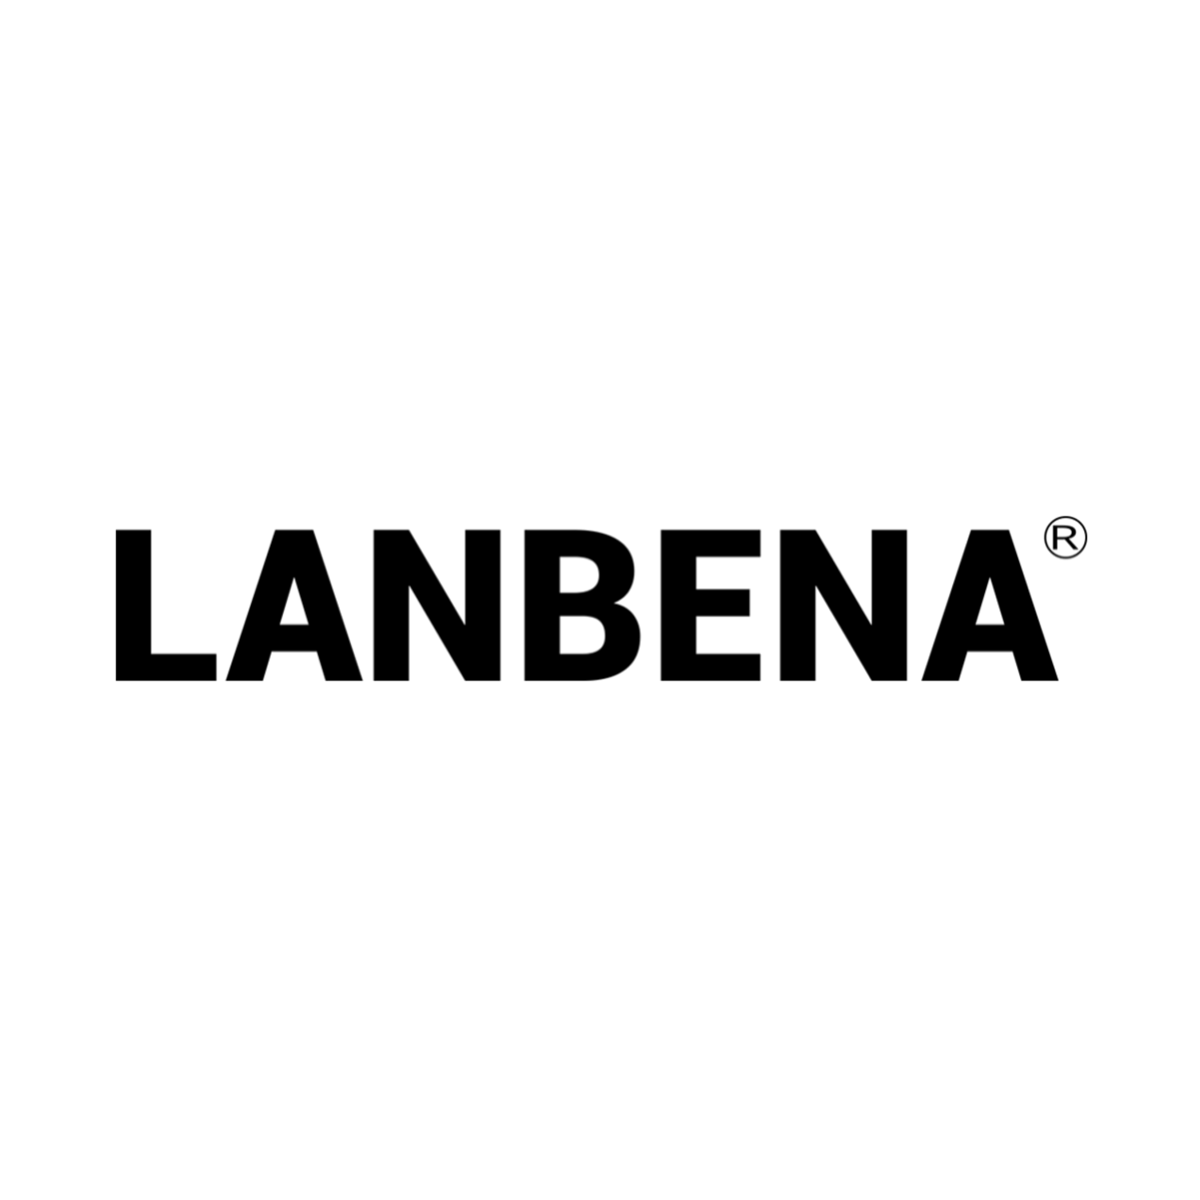 Lanbena logo